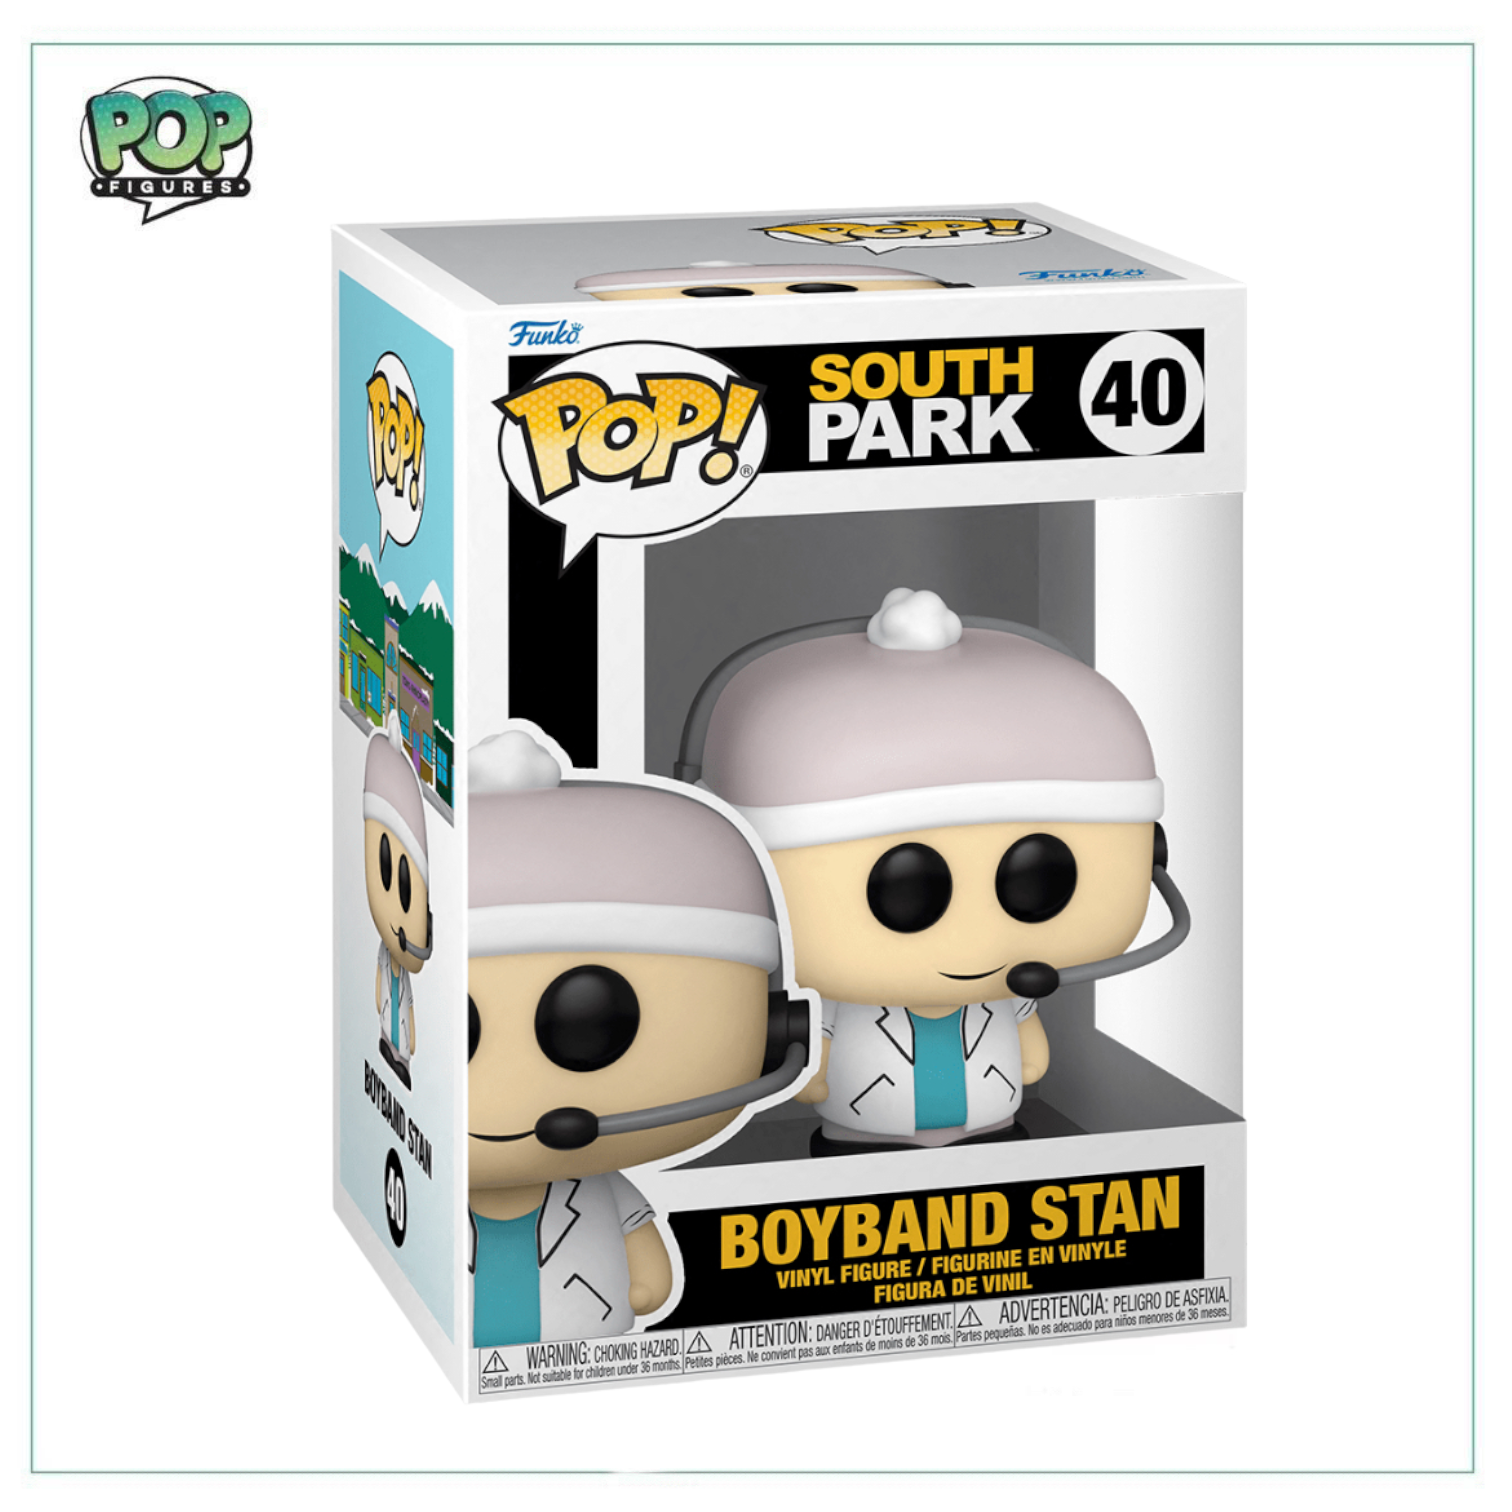 Boyband Stan #40 Funko Pop! - South Park